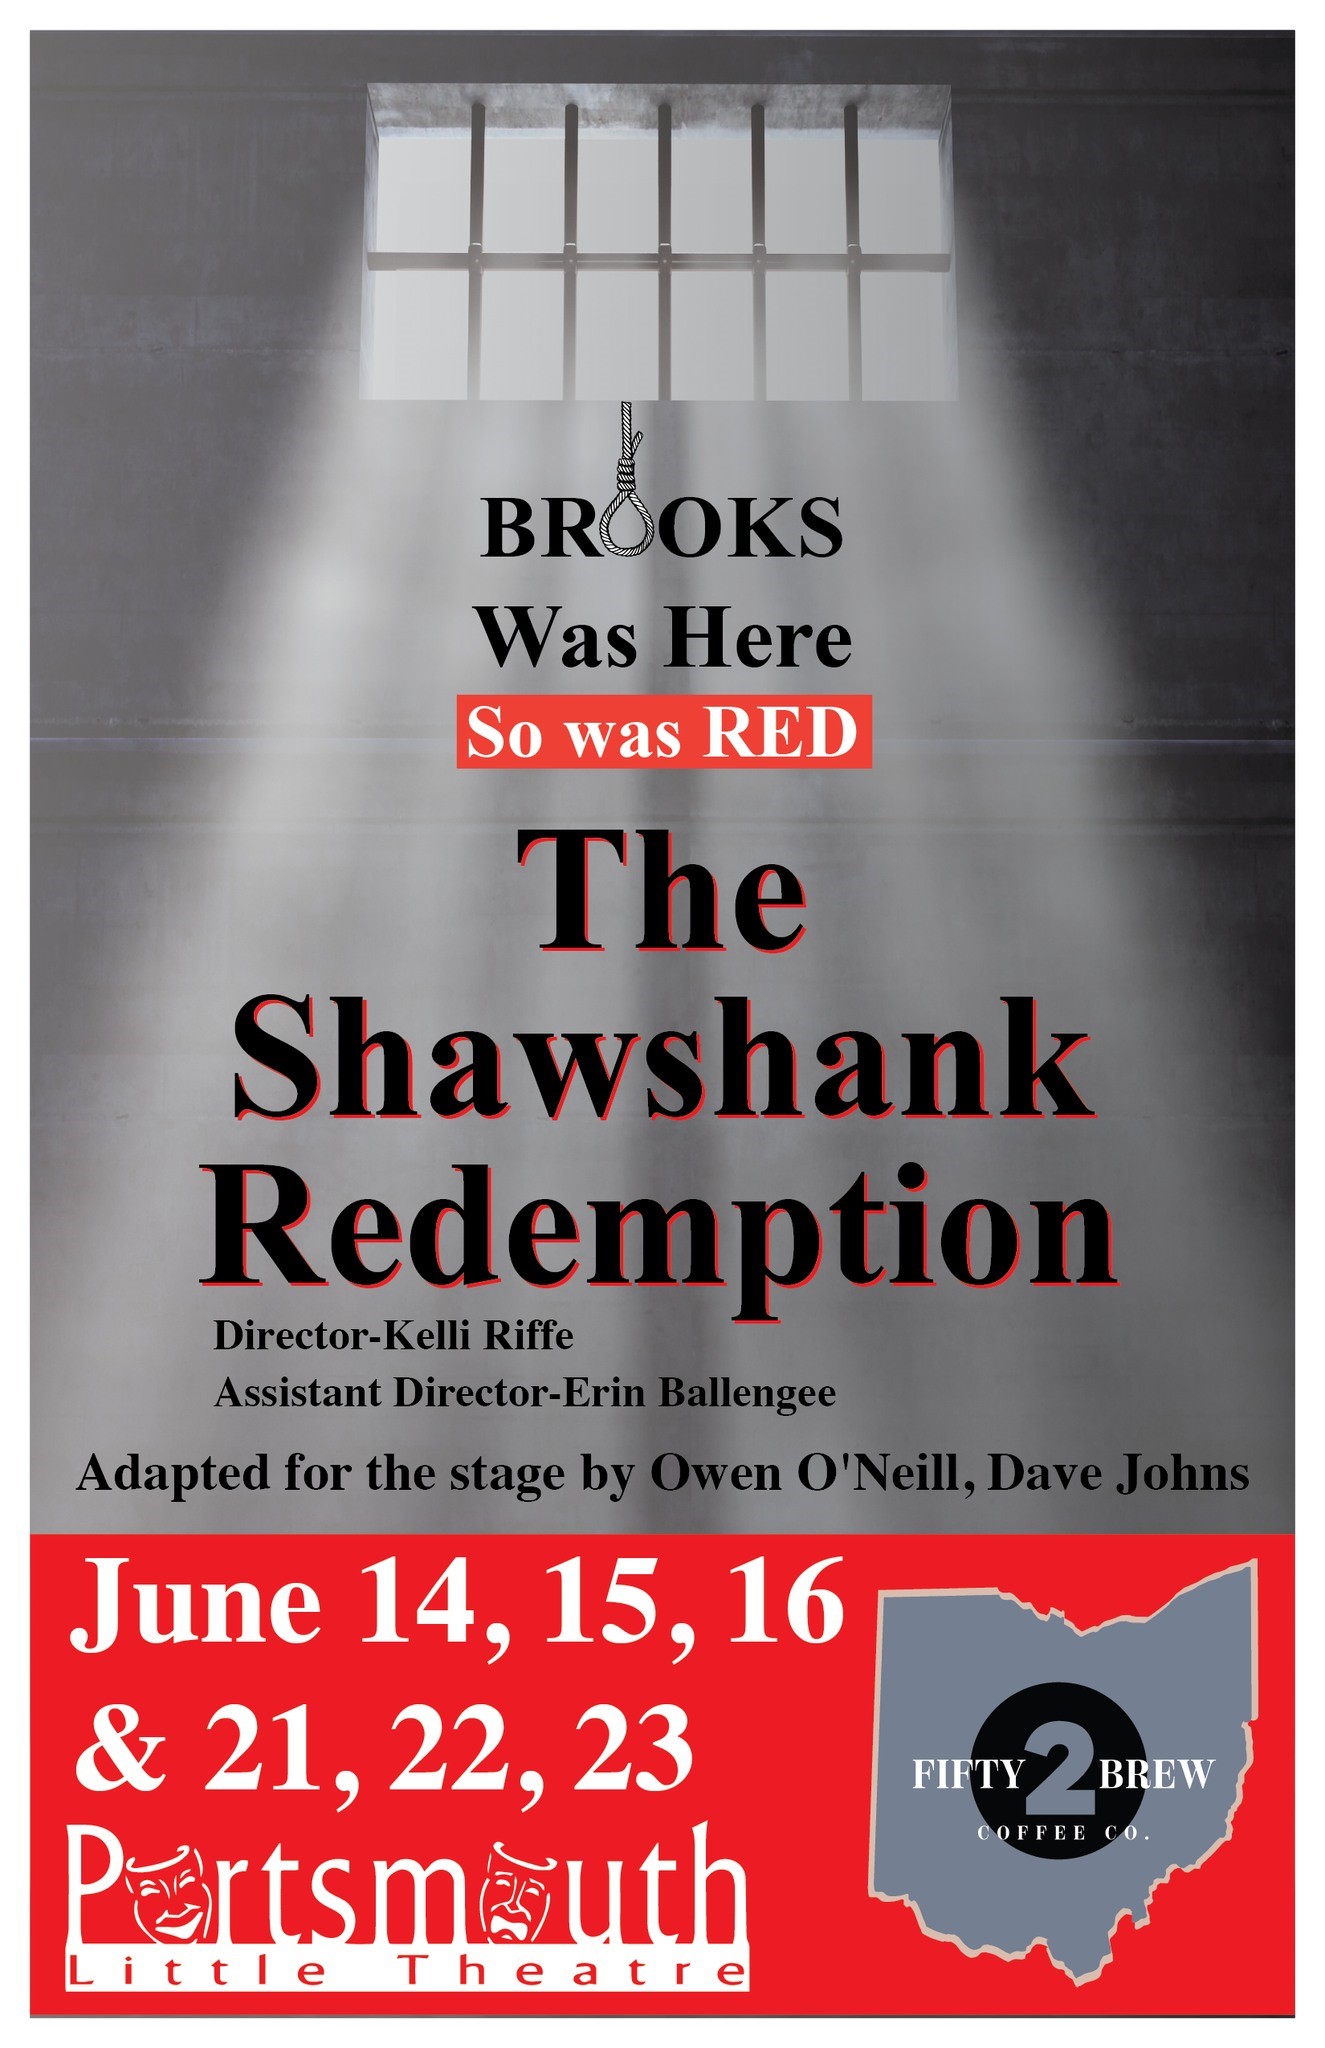 The Shawshank Redemption  on jun. 23, 14:00@Portsmouth Little Theatre - Elegir asientoCompra entradas y obtén información enPortsmouth Little Theatre 